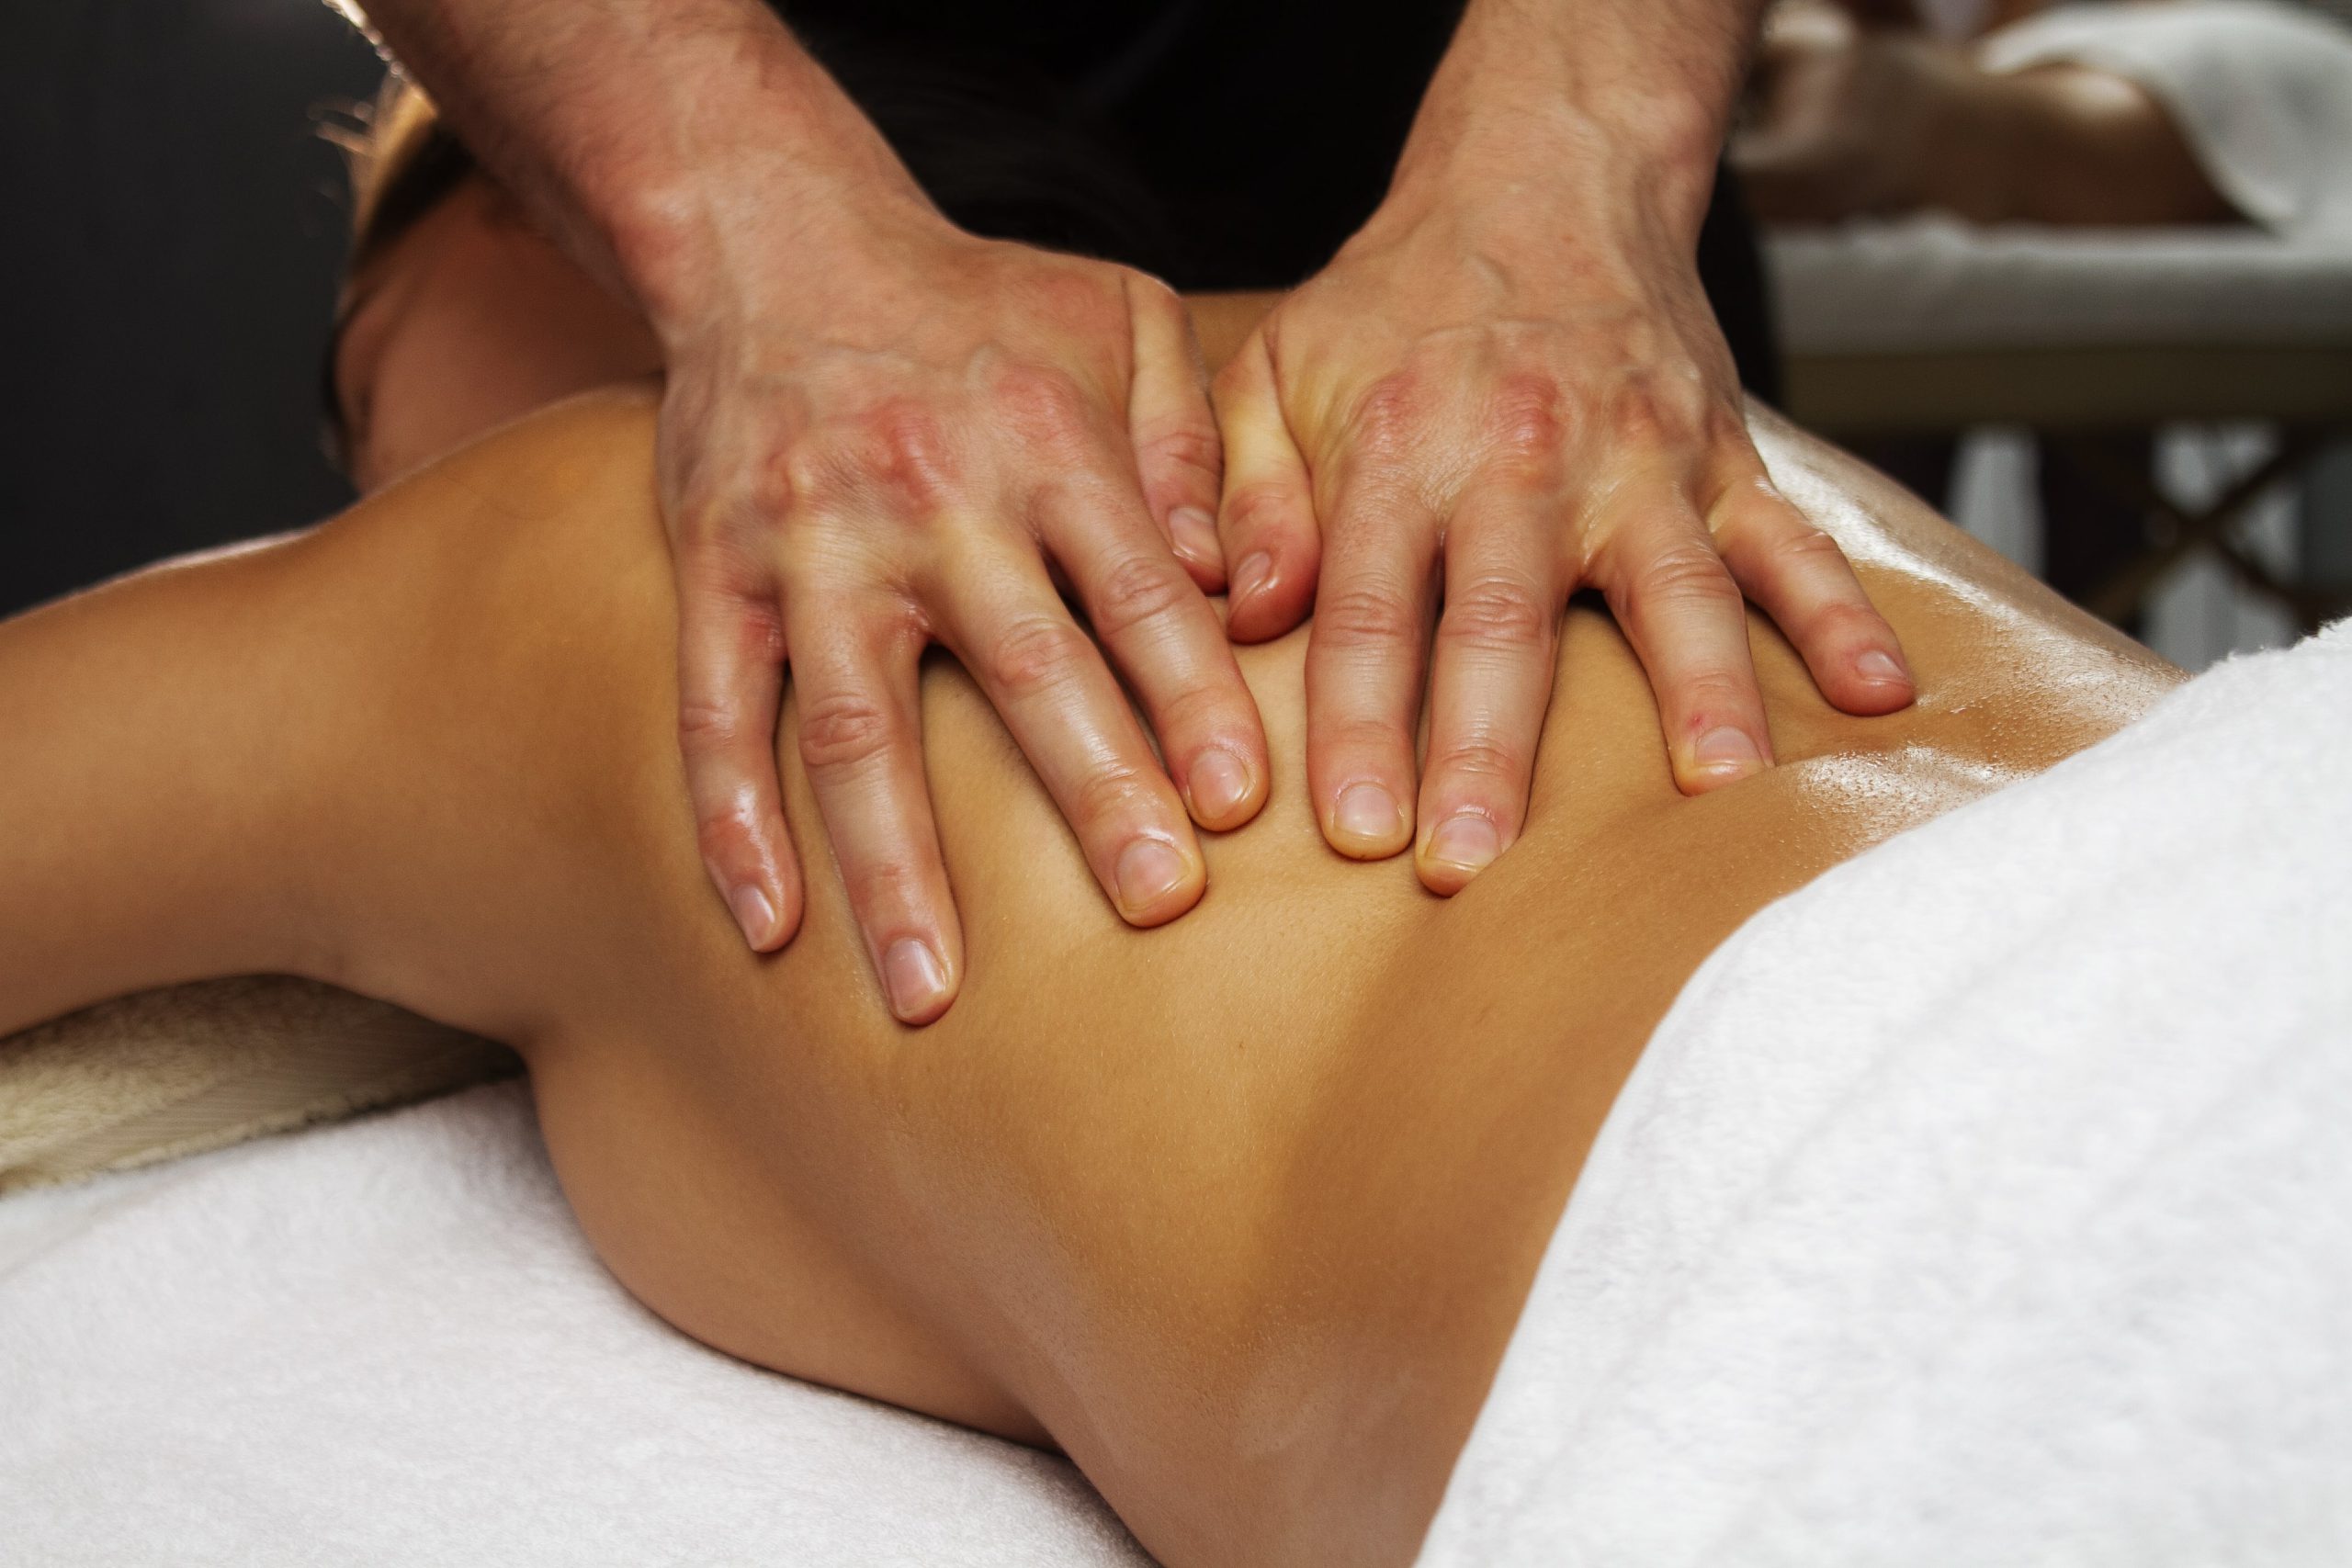 centro de masajes en valencia - masaje relajante